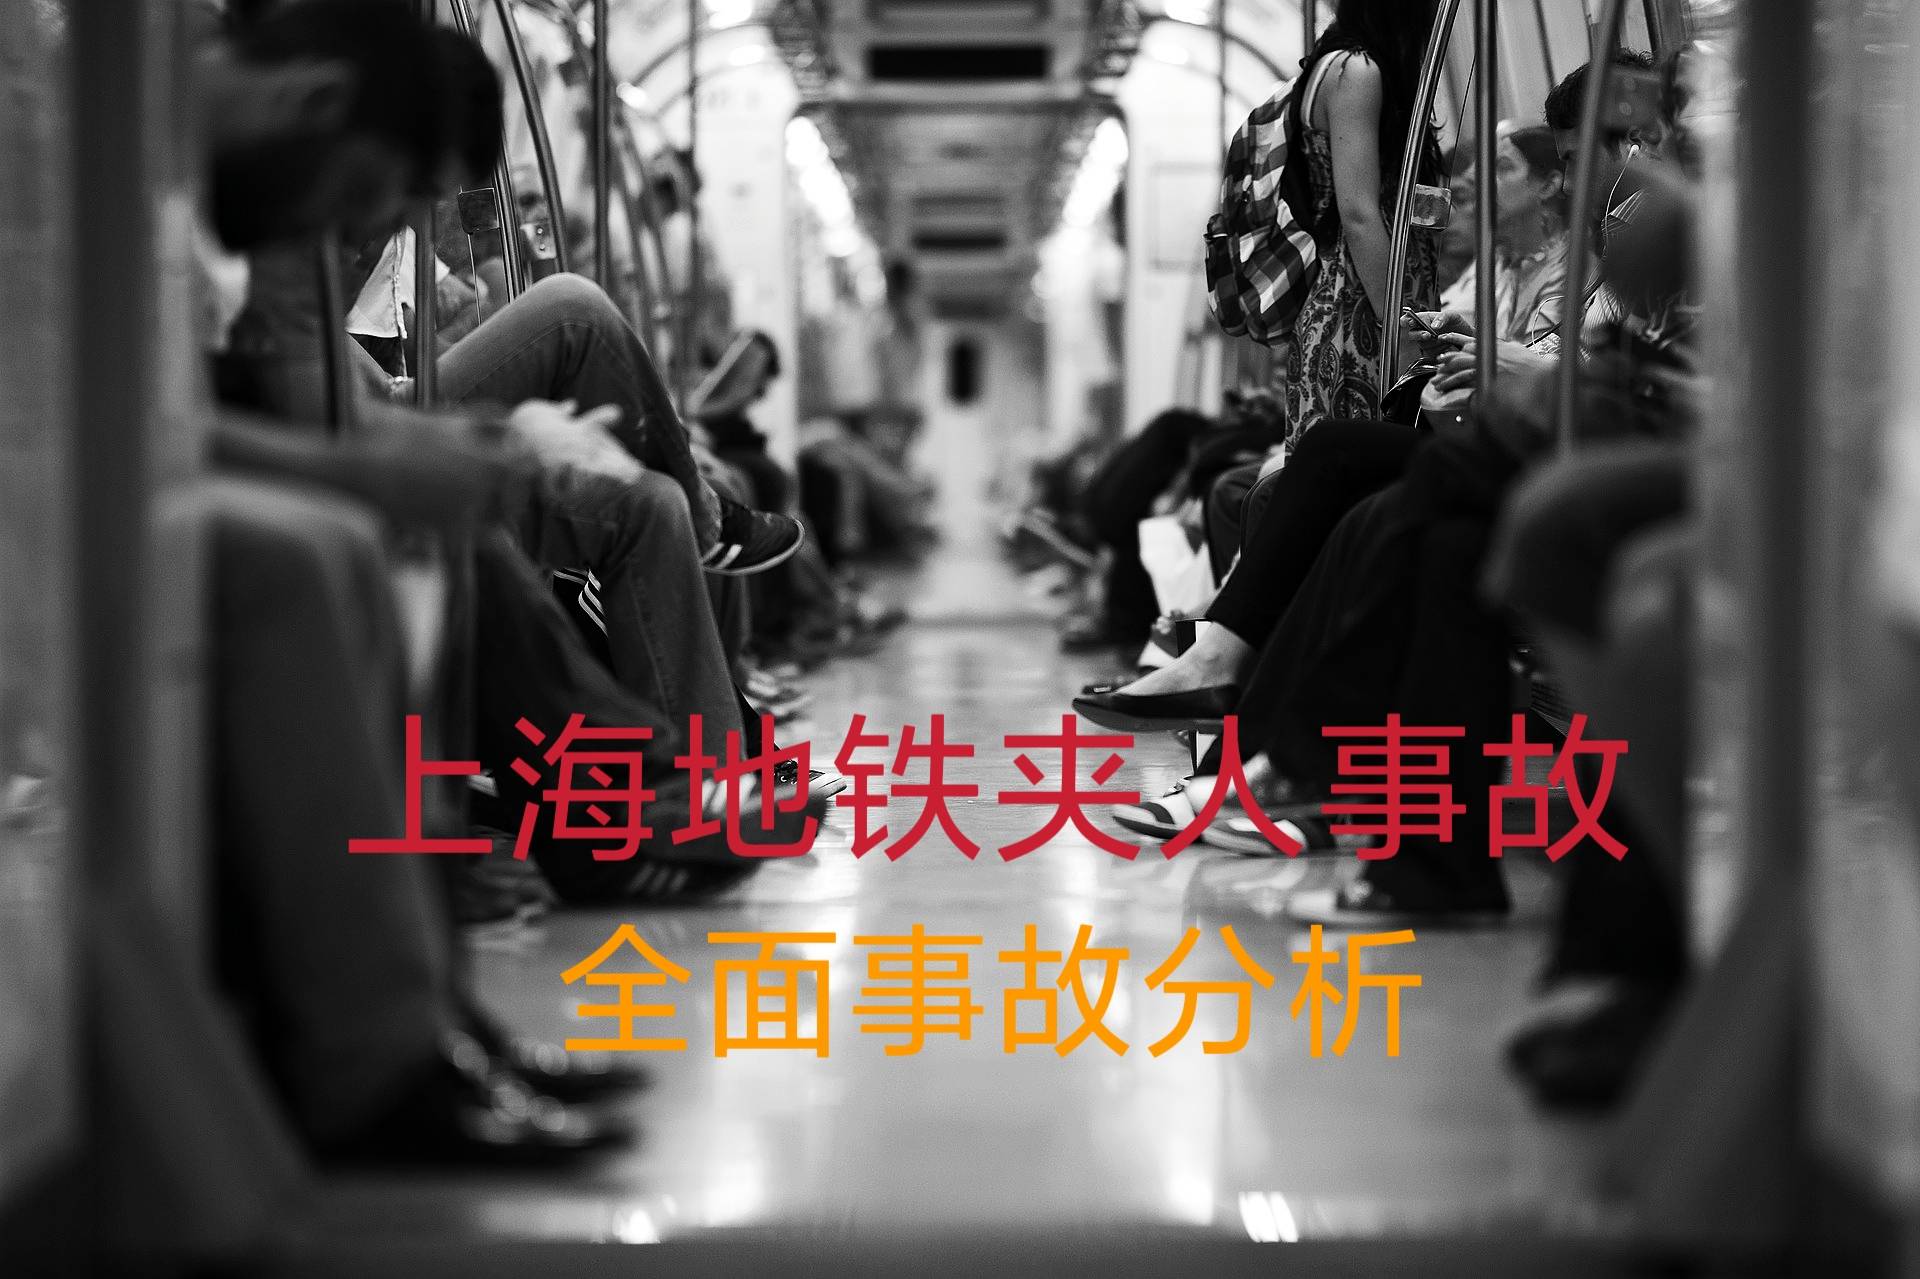 上海地铁事故全面客观分析,老年女乘客被夹身亡,怪无人驾驶吗